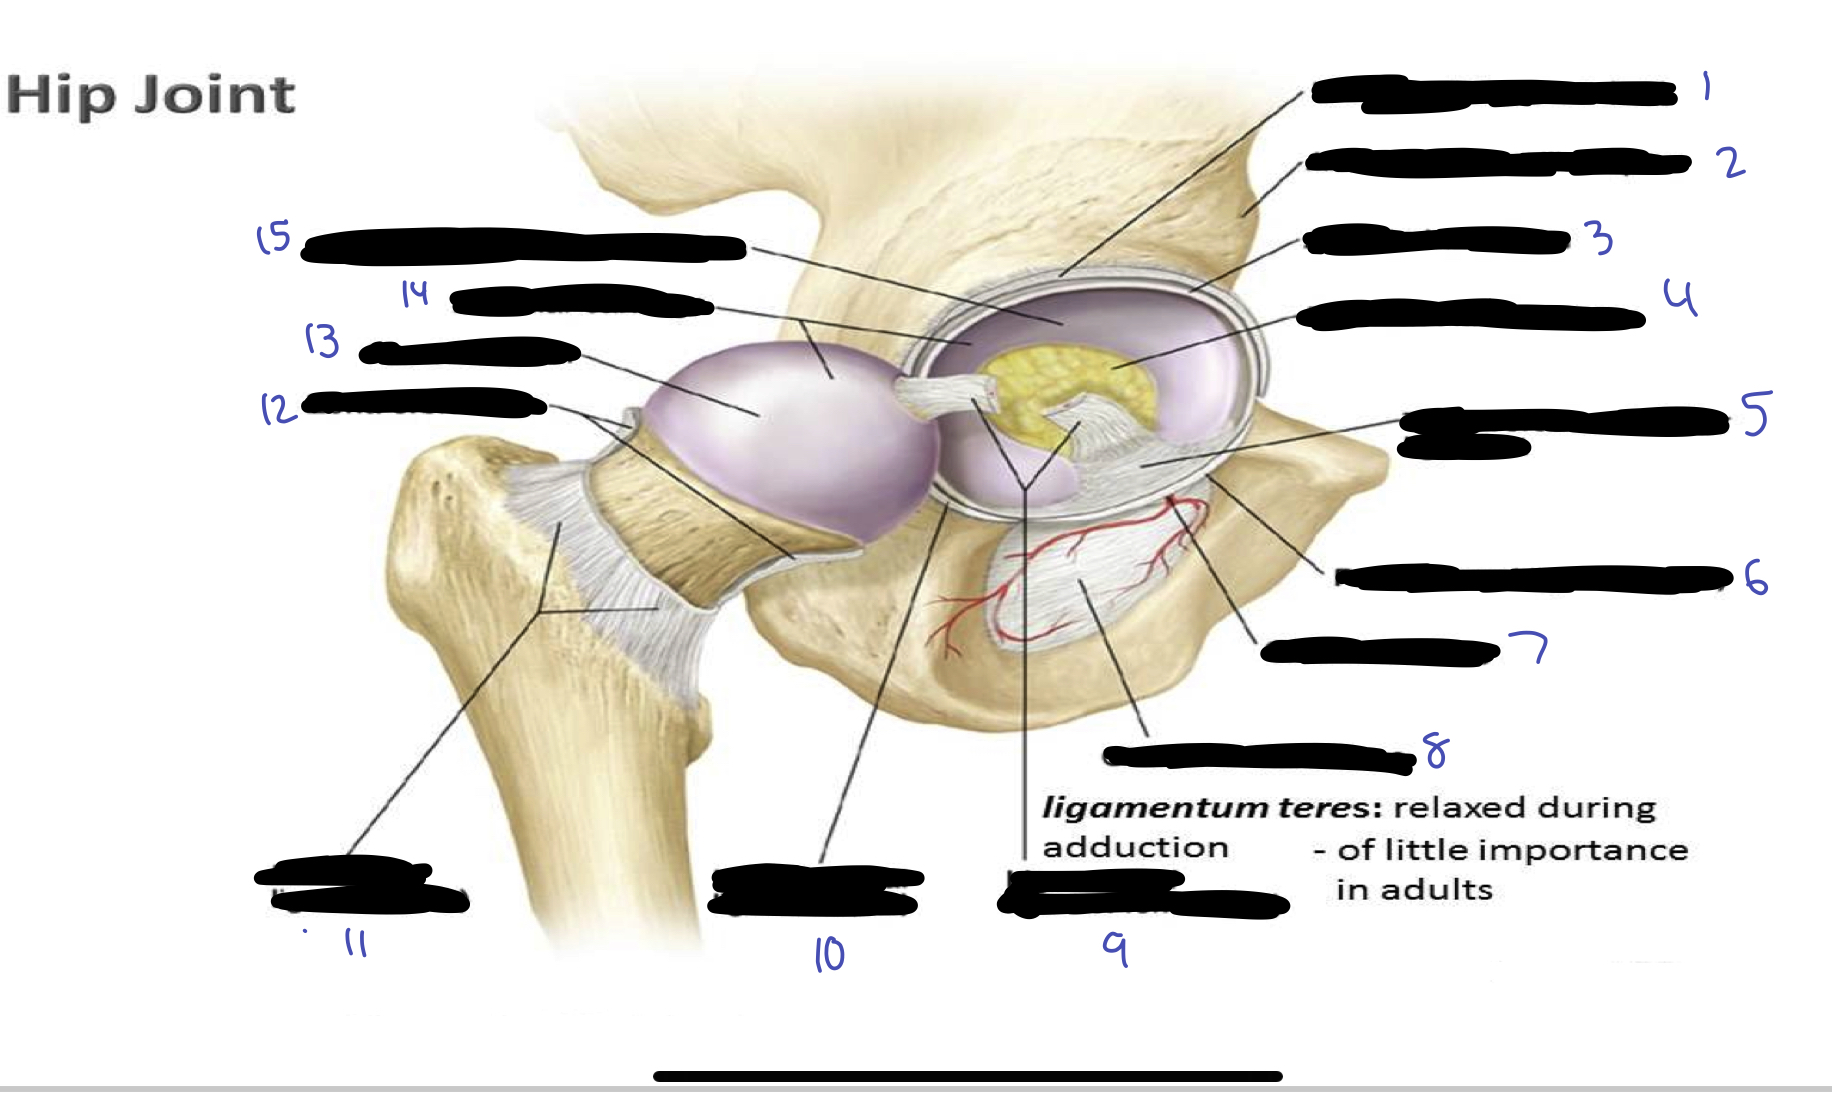 <ol><li><p>iliofemoral ligament</p></li><li><p>anterior inferior iliac spine</p></li><li><p>acetabular labrum</p></li><li><p>fat in acetabular fossa</p></li><li><p>transverse acetabular ligament</p></li><li><p>pubofermoral ligament</p></li><li><p>obturator artery</p></li><li><p>obturator membrane</p></li><li><p>ligament of head of femur</p></li><li><p>ischiofemoral ligament</p></li><li><p>iliofemoral ligament</p></li><li><p>zona orbicularis</p></li><li><p>head of femur</p></li><li><p>articular cartilage</p></li><li><p>lunate surface of acetabulum</p></li></ol>